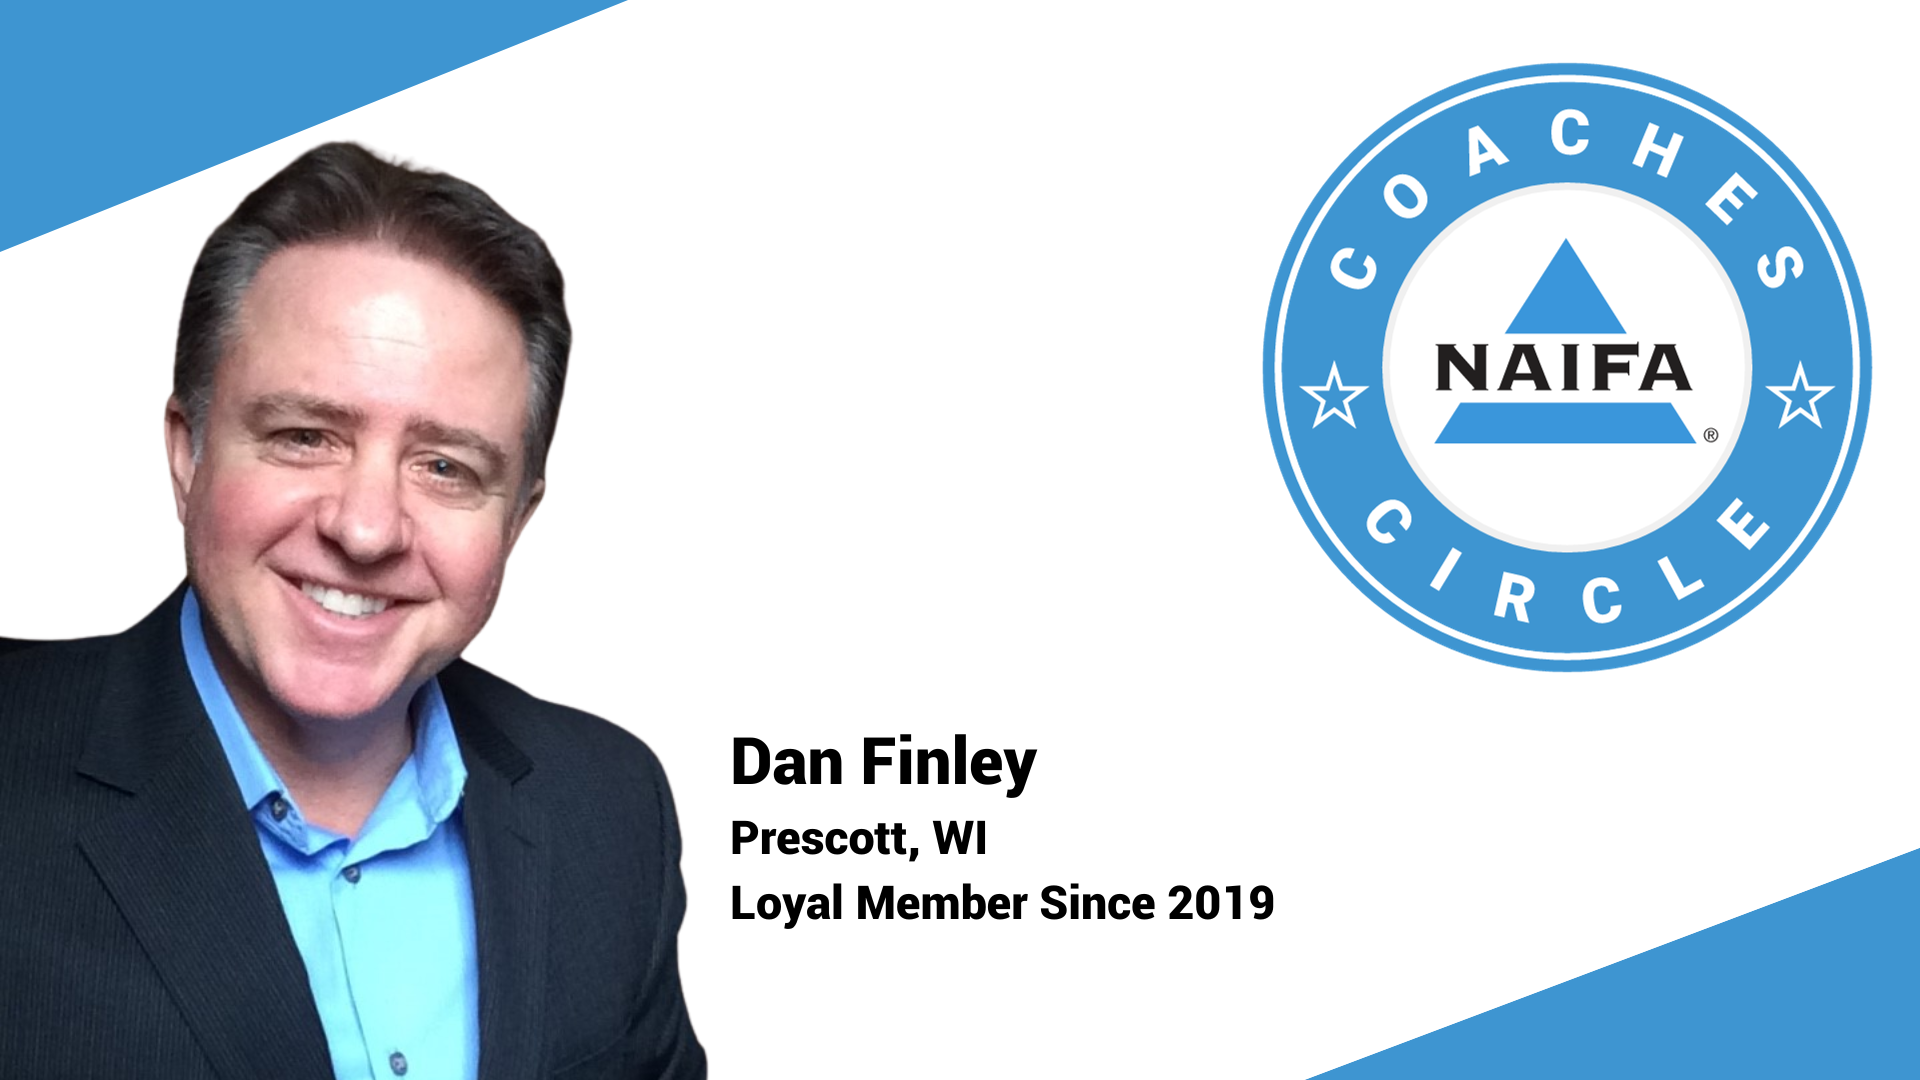 Dan Finley offers coaching sessions to NAIFA members.